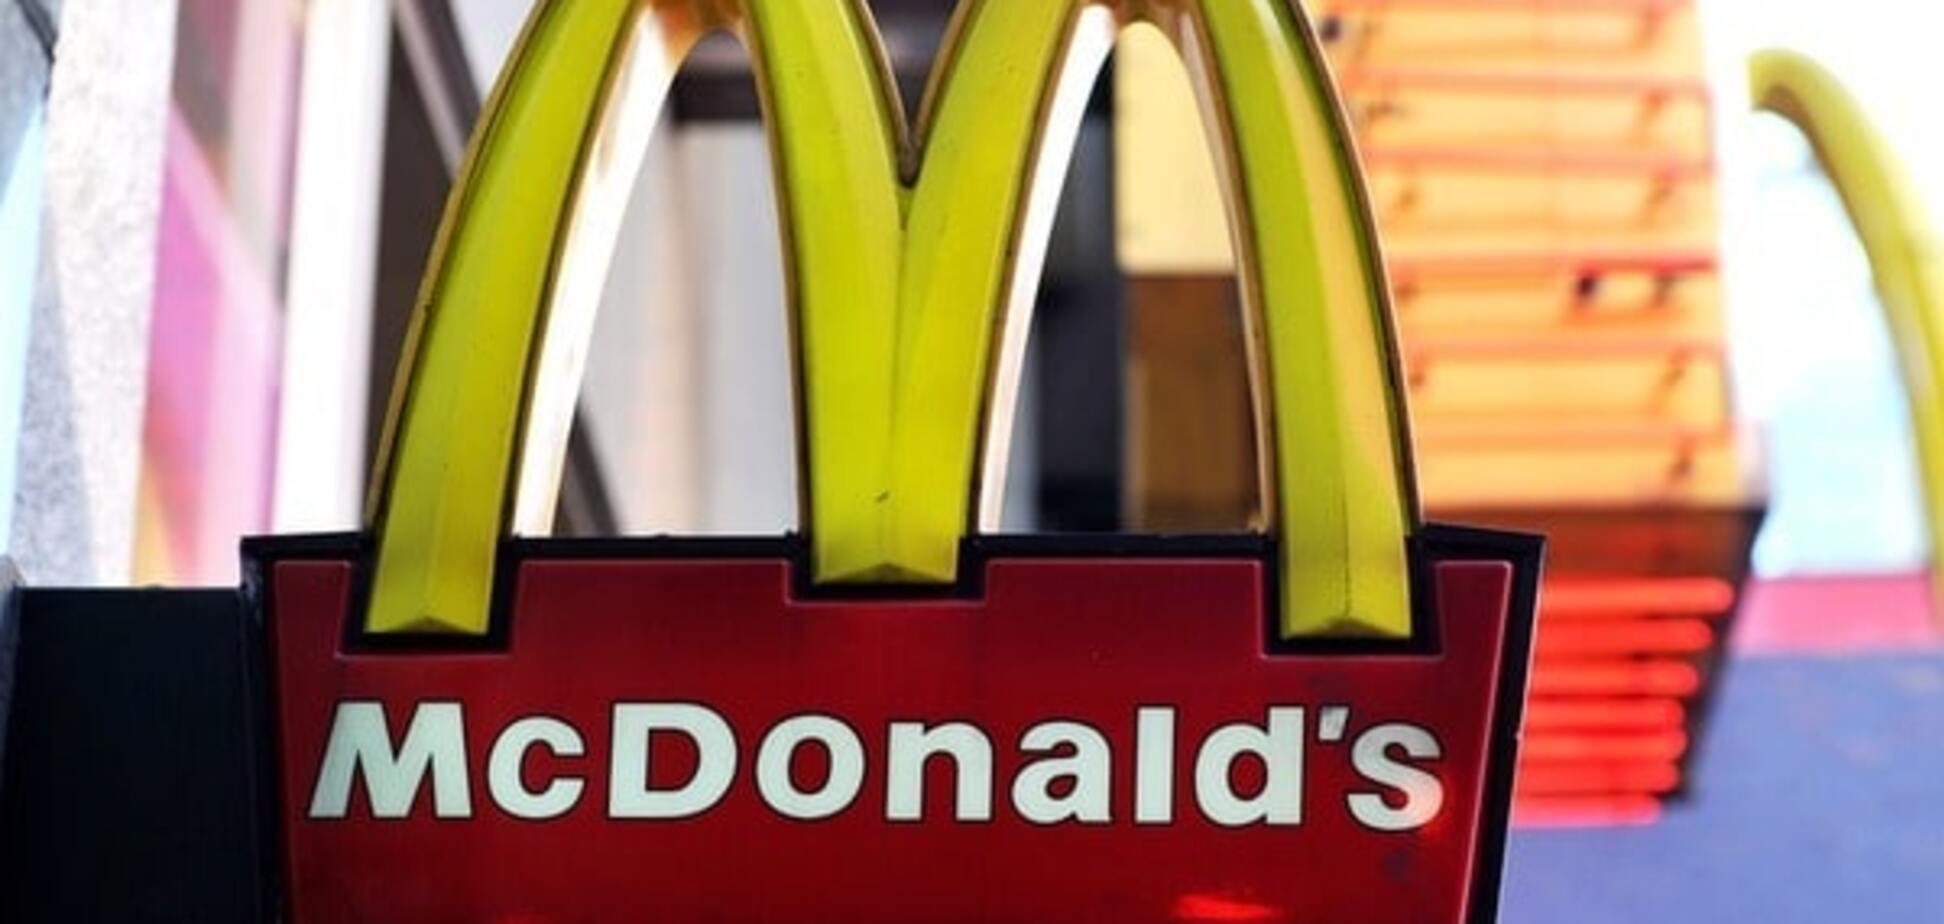 Затягніть пояси тугіше: закрився найбільший у світі McDonald's